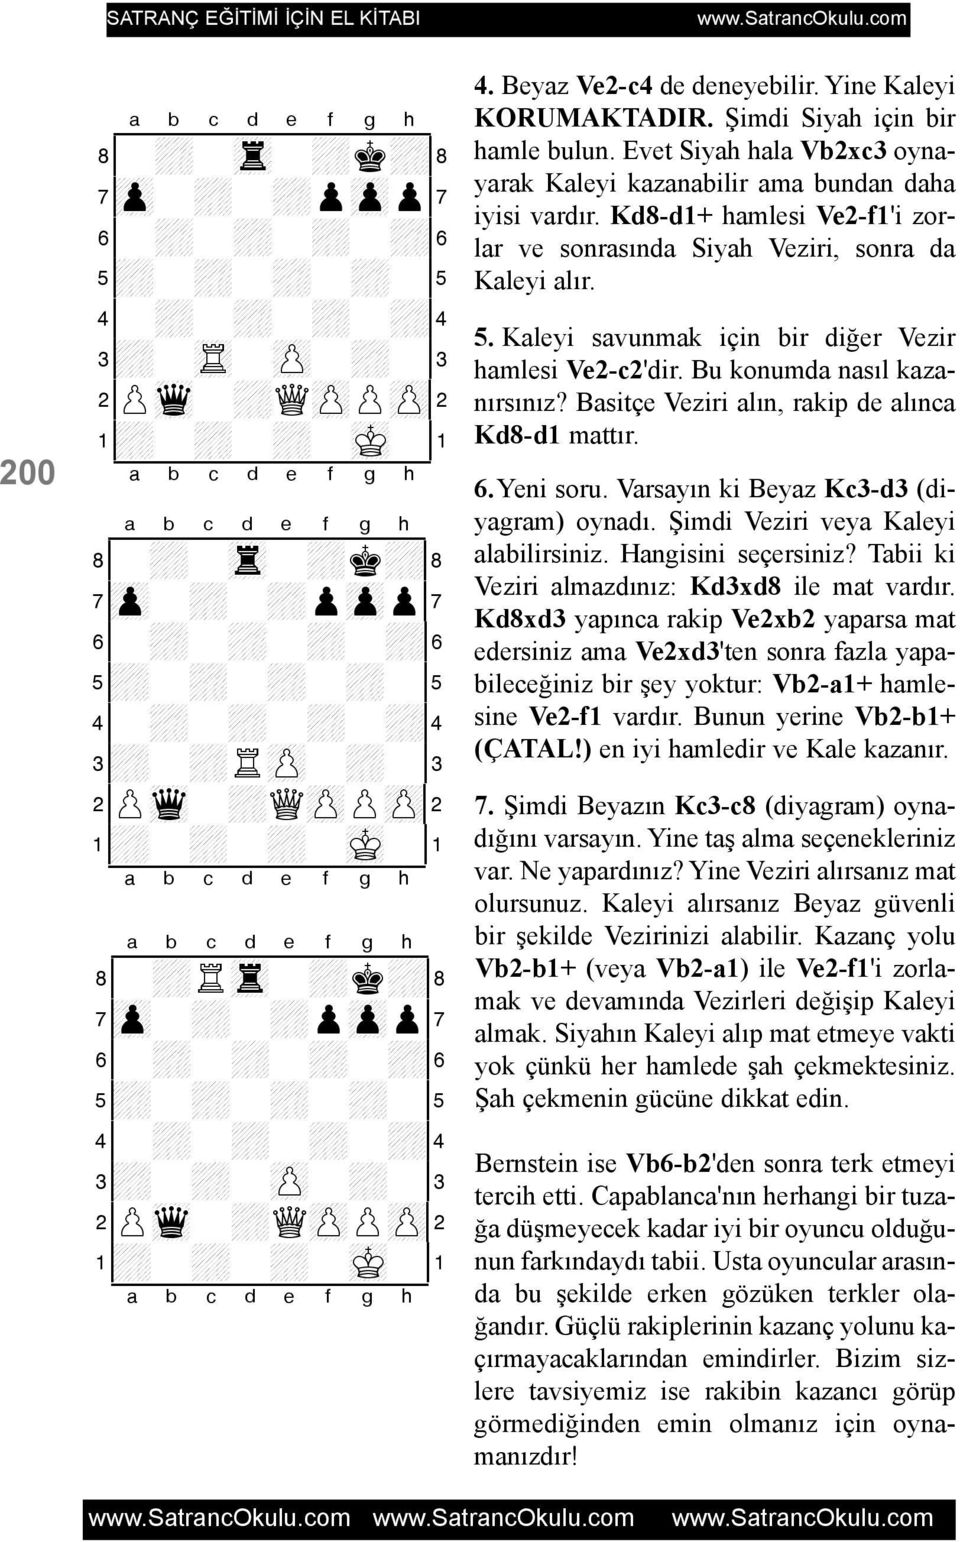 Evet Siyah hala Vb2xc3 oynayarak Kaleyi kazanabilir ama bundan daha iyisi vardýr. Kd8-d1+ hamlesi Ve2-f1'i zorlar ve sonrasýnda Siyah Veziri, sonra da Kaleyi alýr. 5.